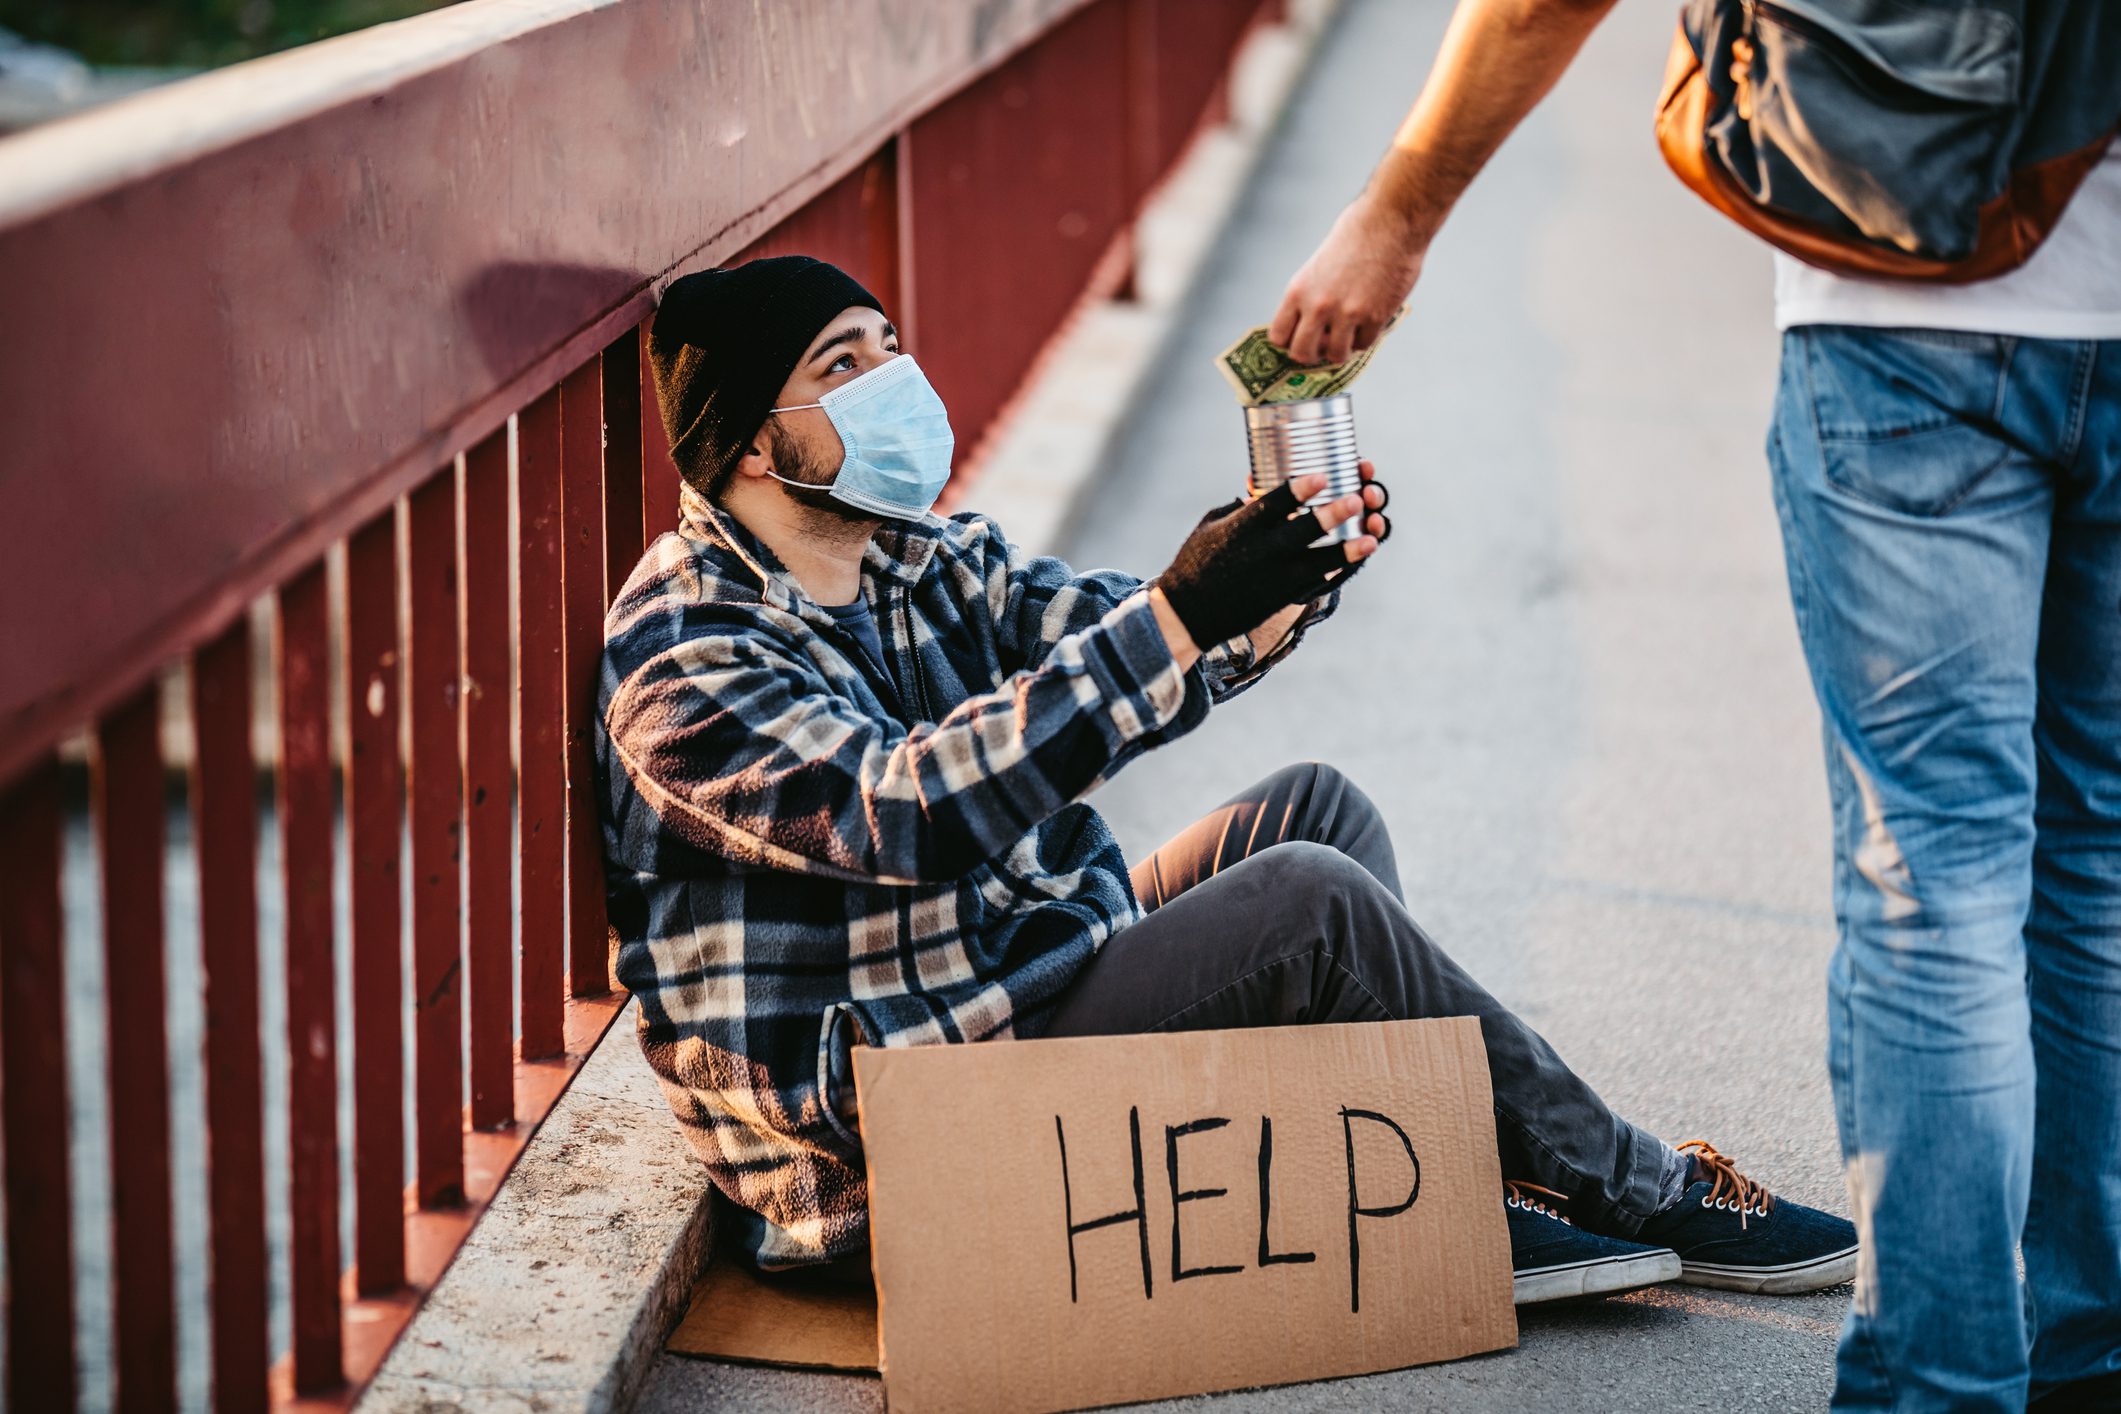 Homeless man begging for money